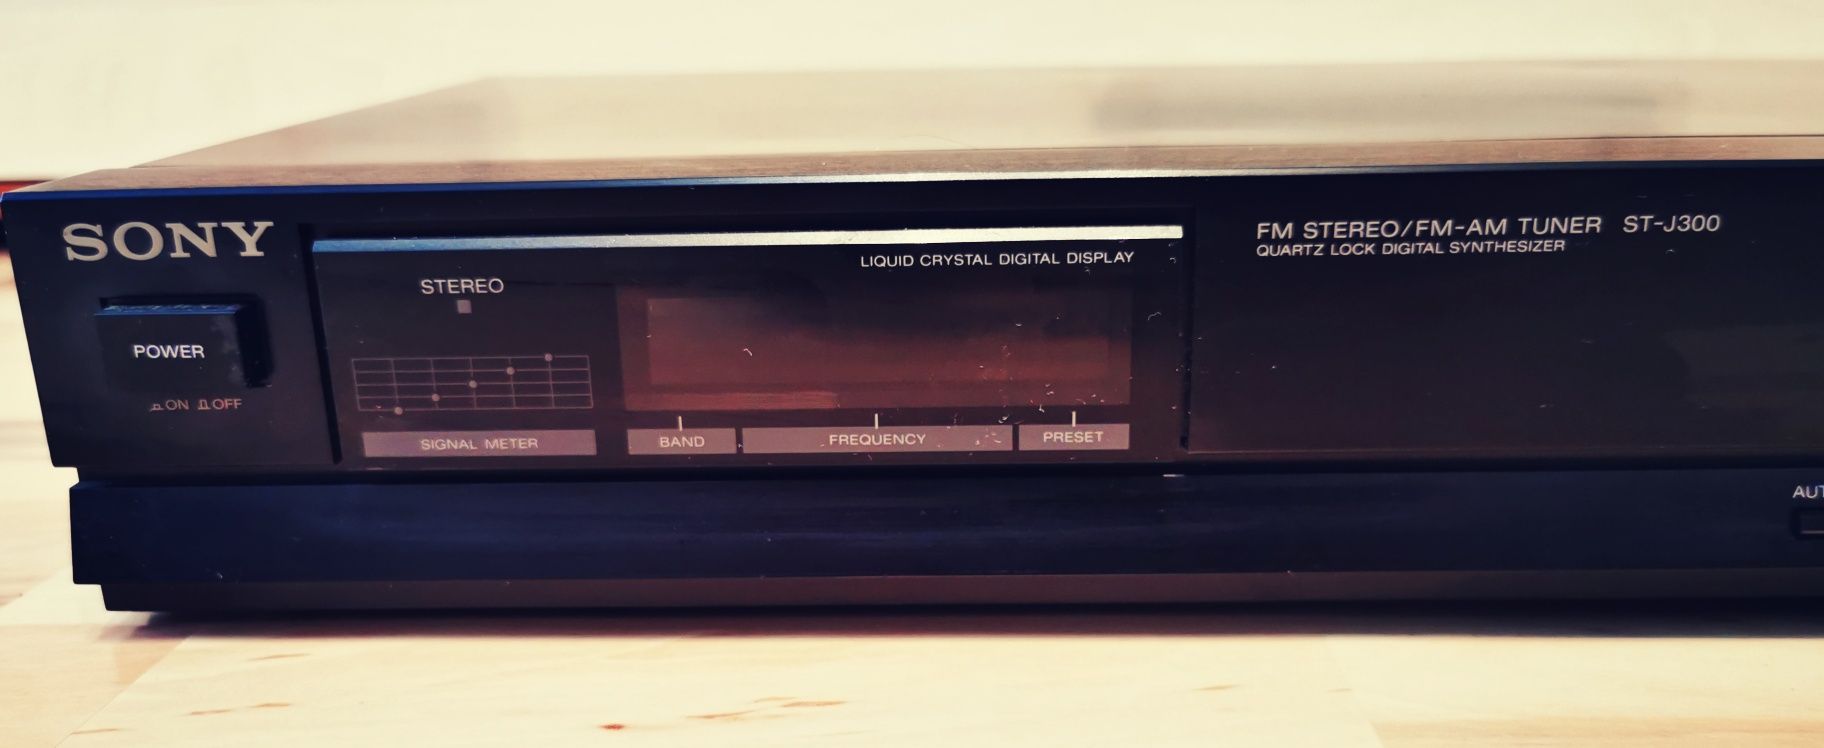 Sony stereo fm am tuner ST-J300 retro vintage anii 80
St